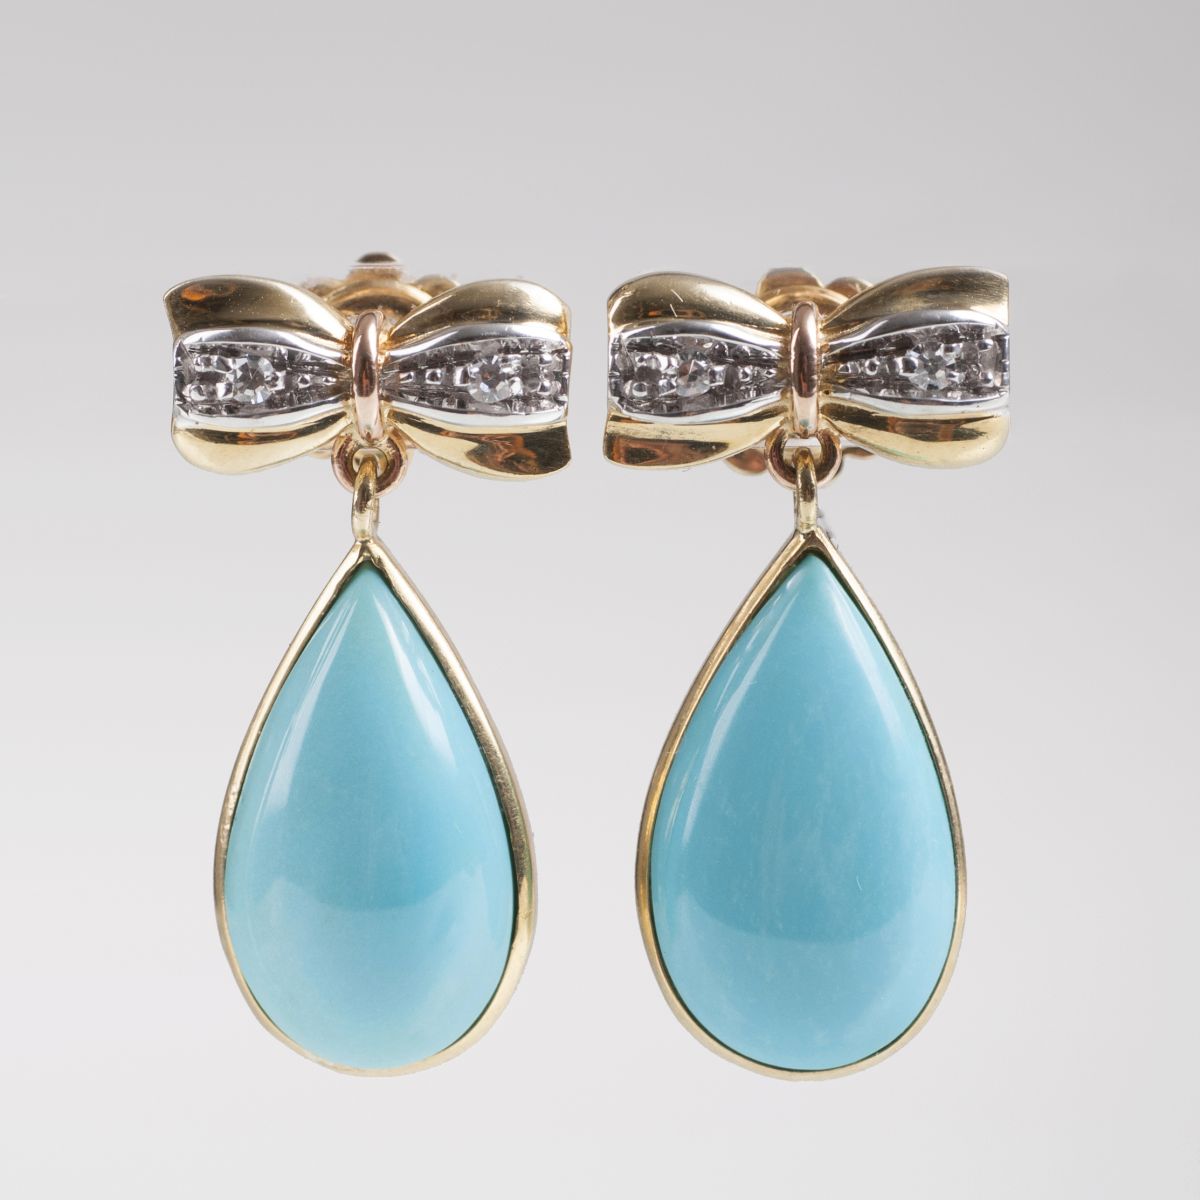 Paar Türkis-Ohrringe mit Schleifen-Dekor